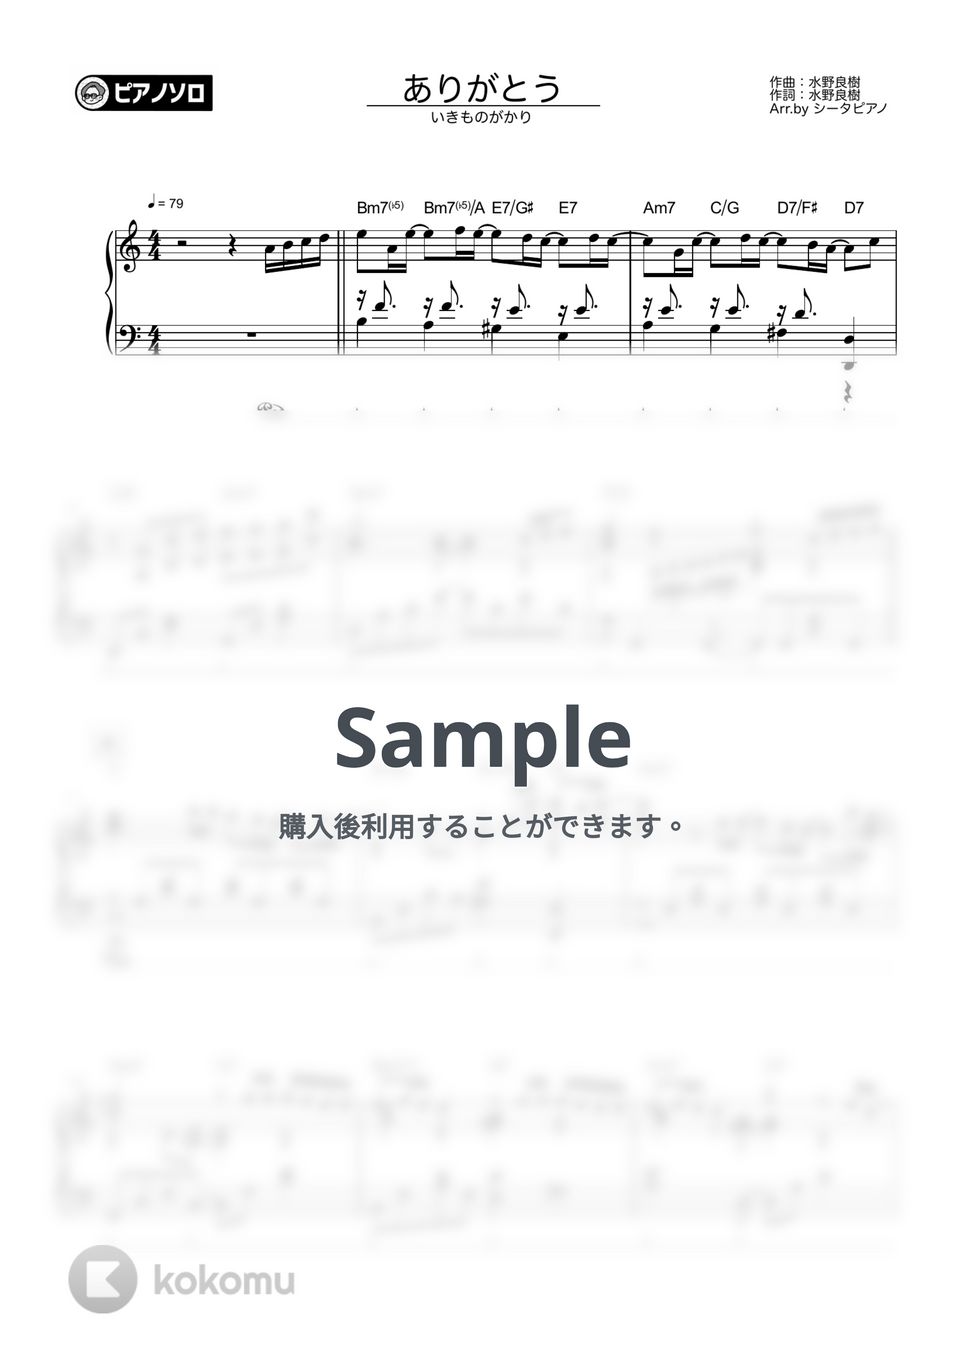 いきものがかり - ありがとう by シータピアノ